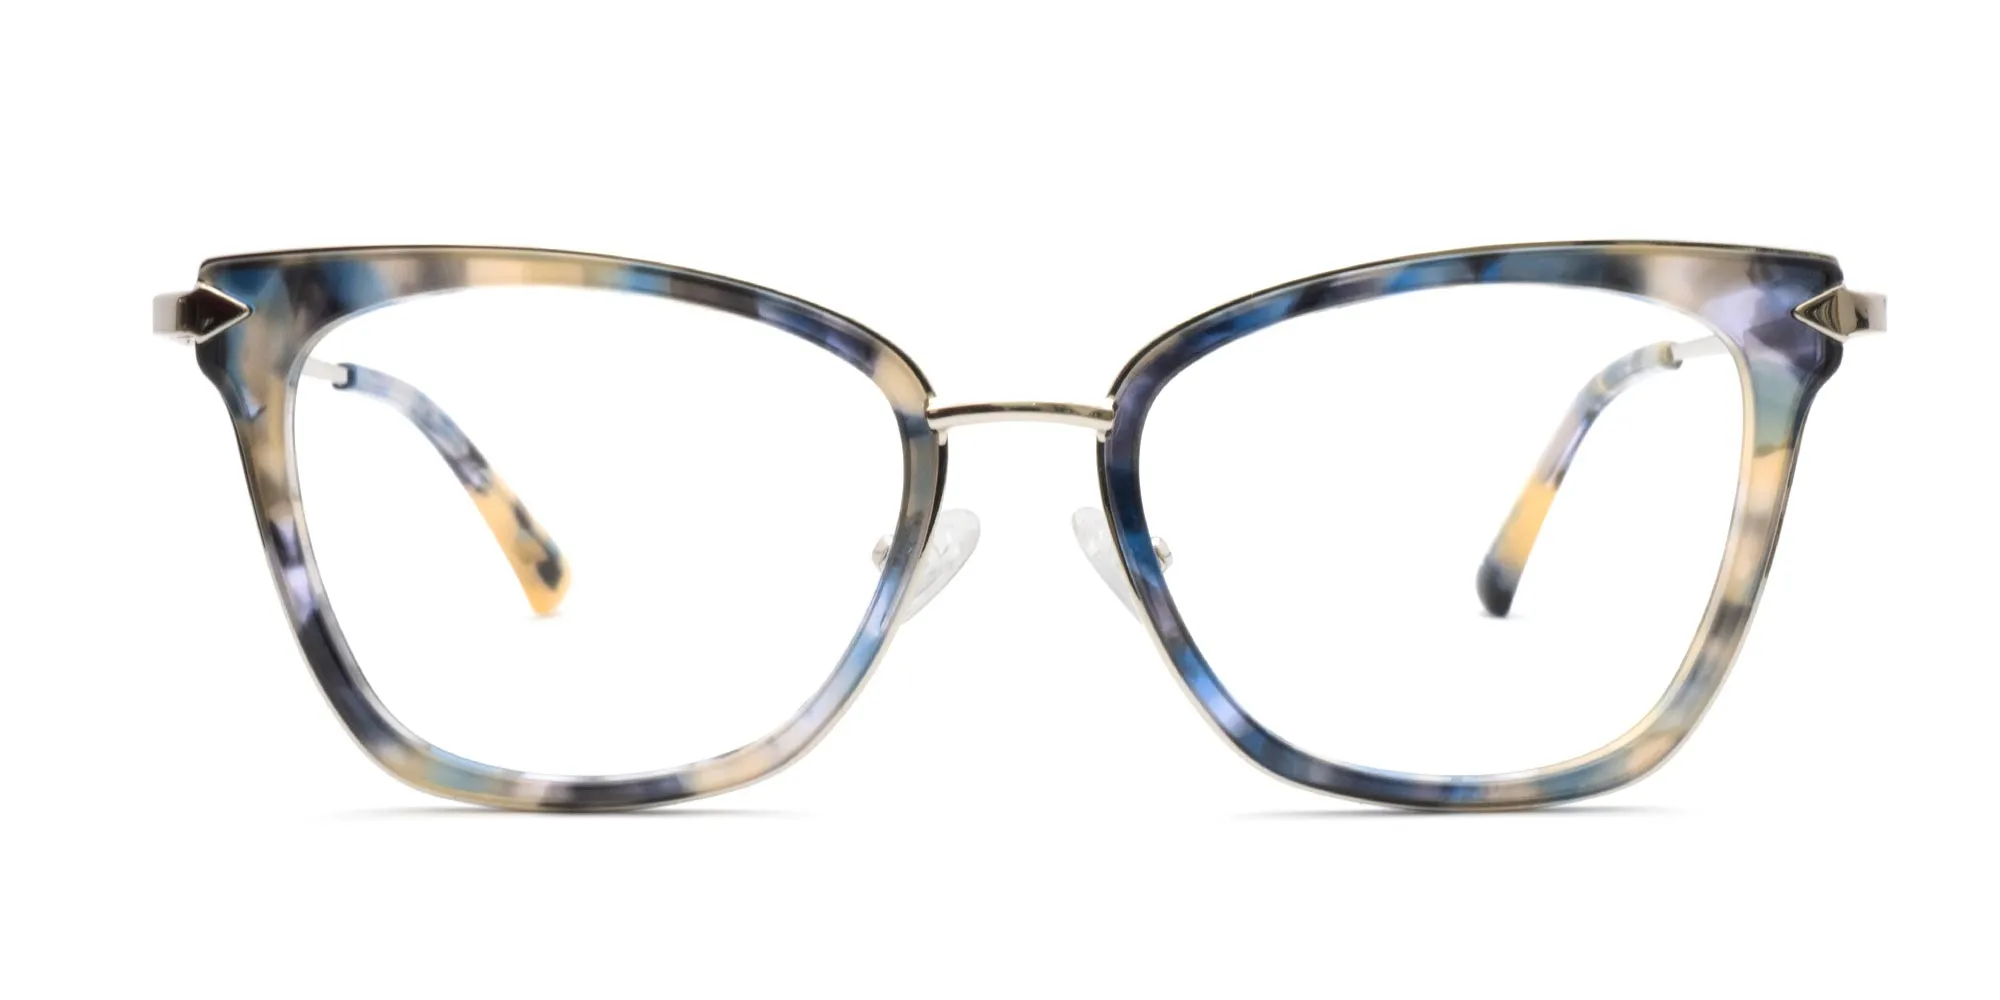 BIBURY 2 - Ladies Designer Glasses Frames | Specscart.®